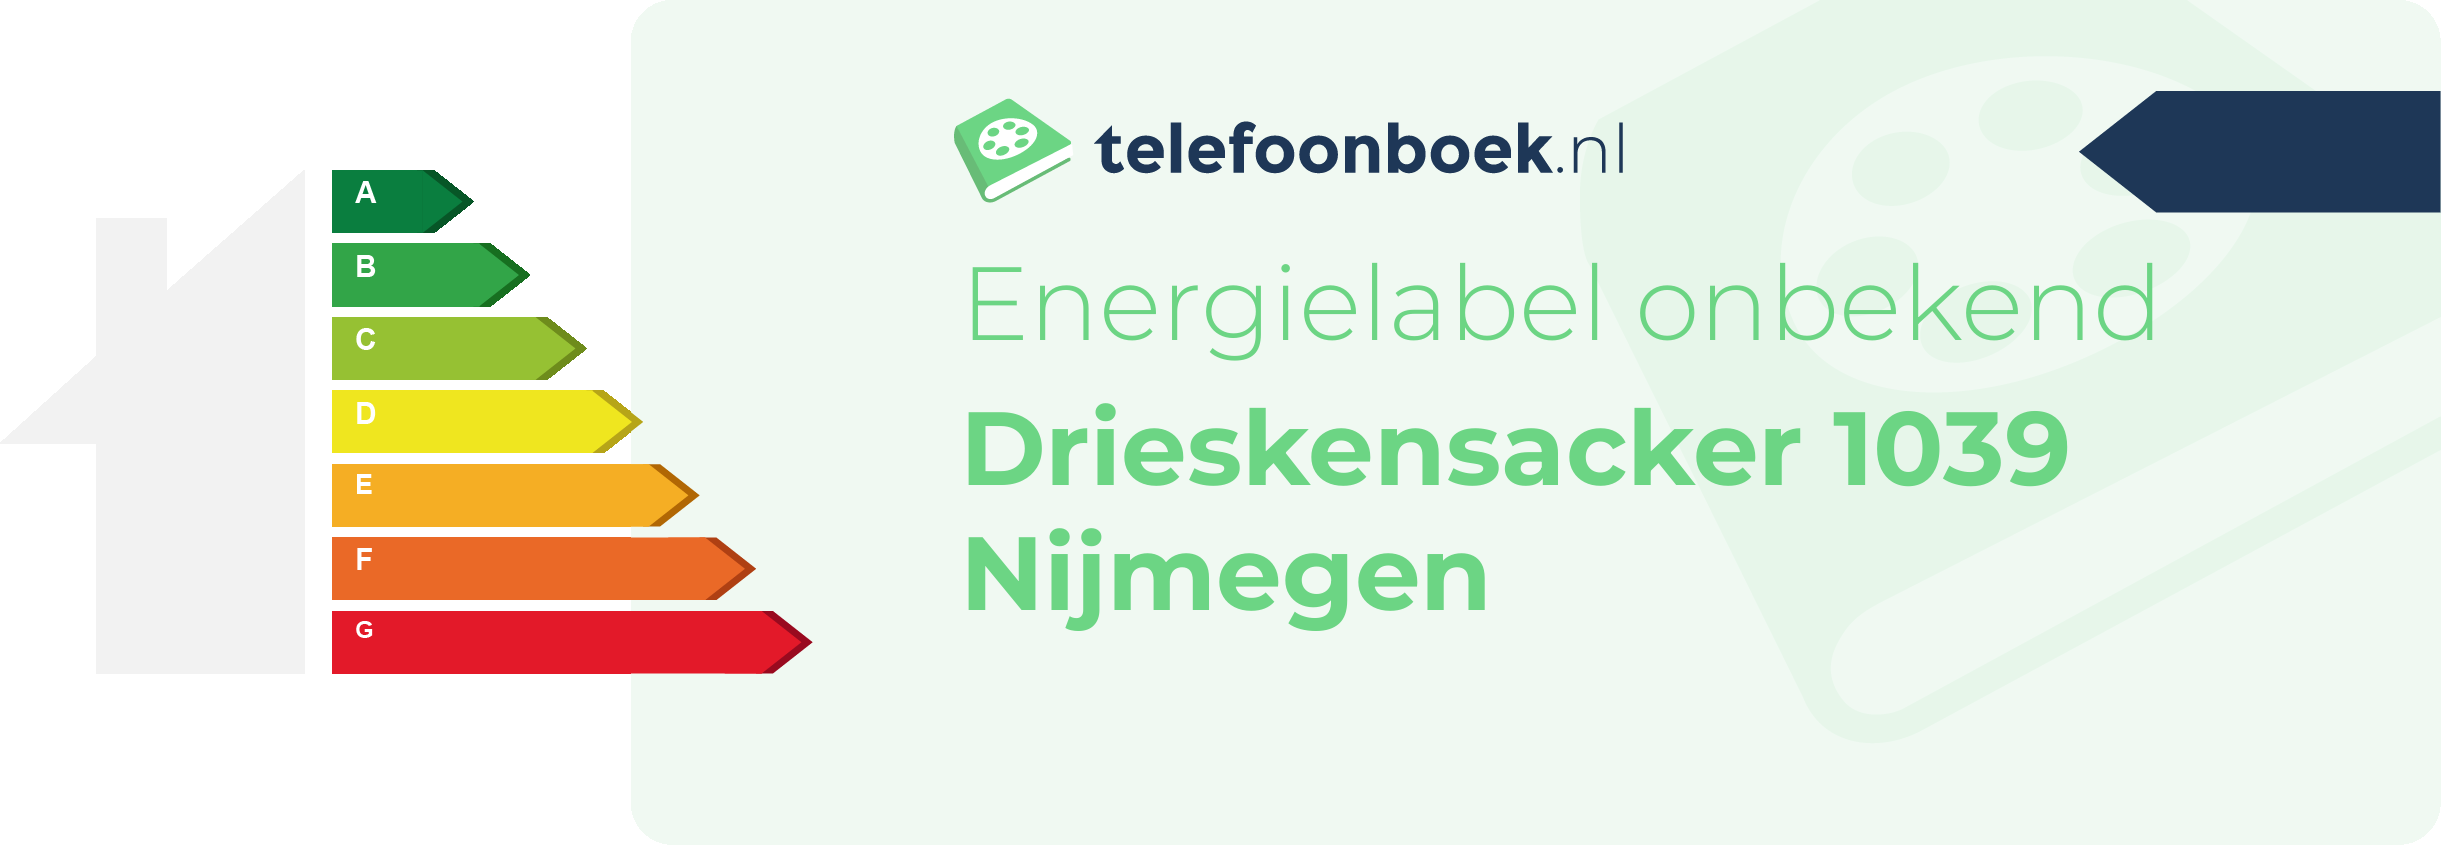 Energielabel Drieskensacker 1039 Nijmegen